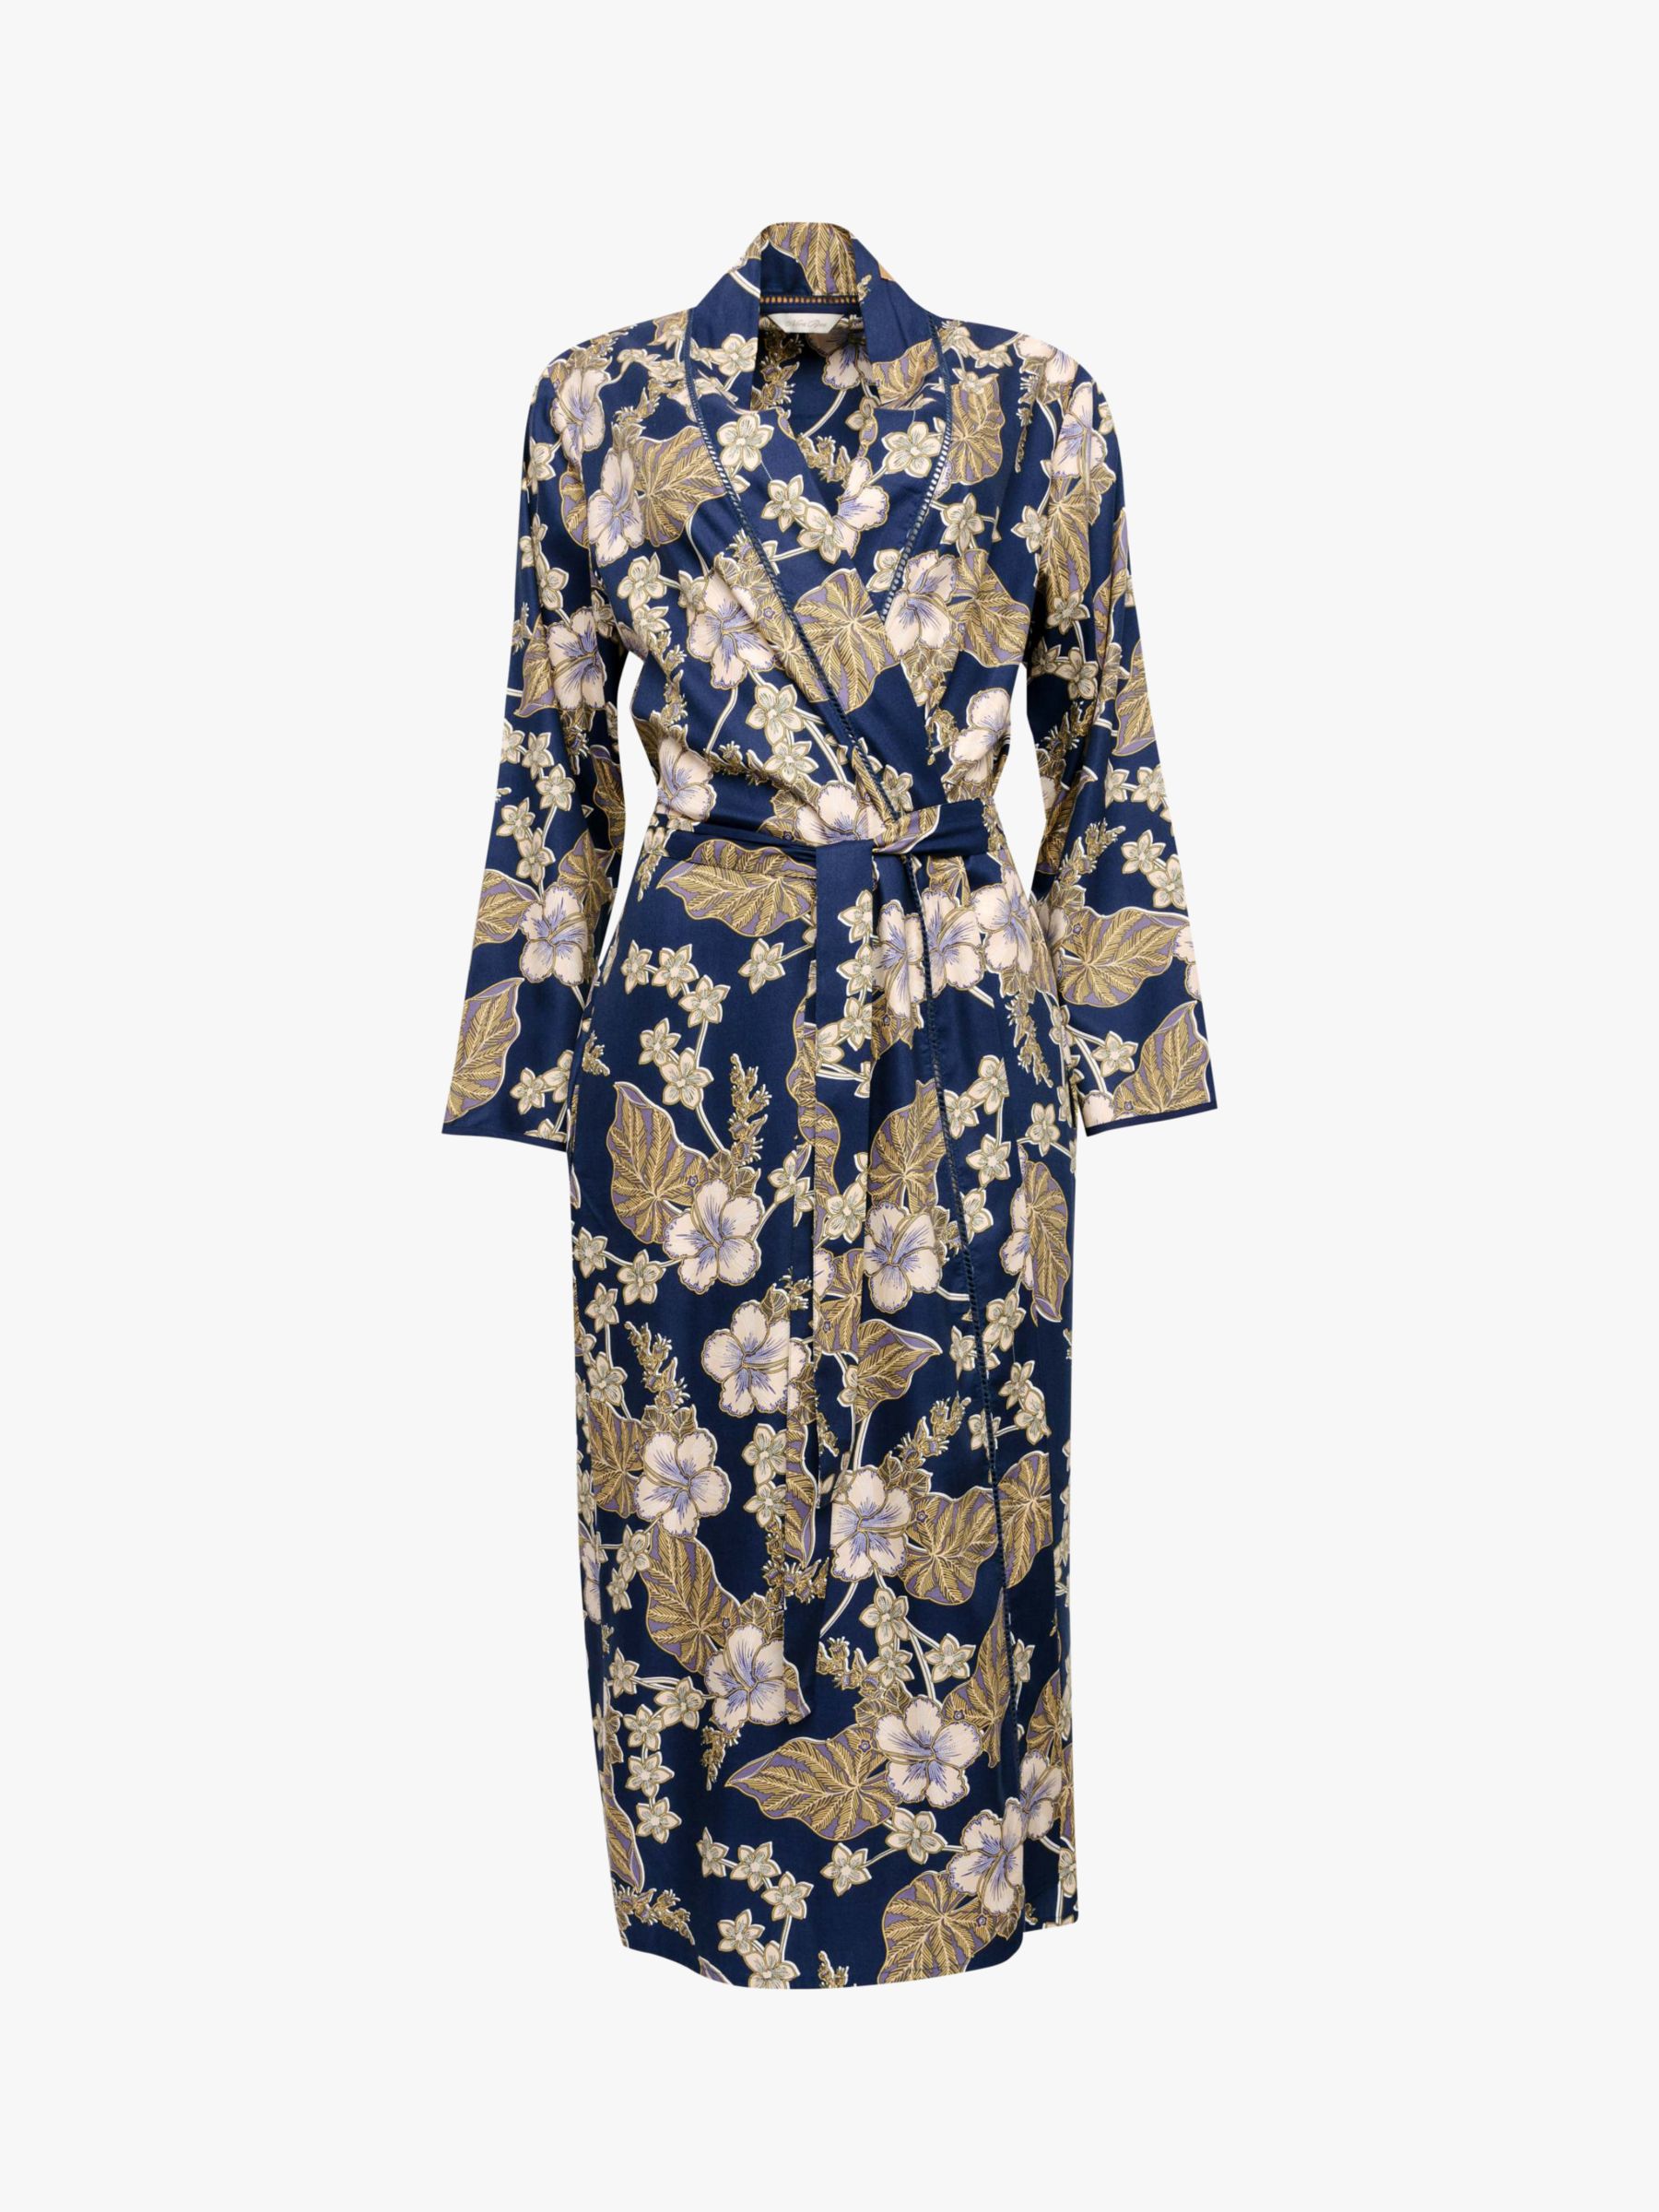 Buy Nora Rose by Cyberjammies Winnie Floral Dressing Gown, Blue Online at johnlewis.com